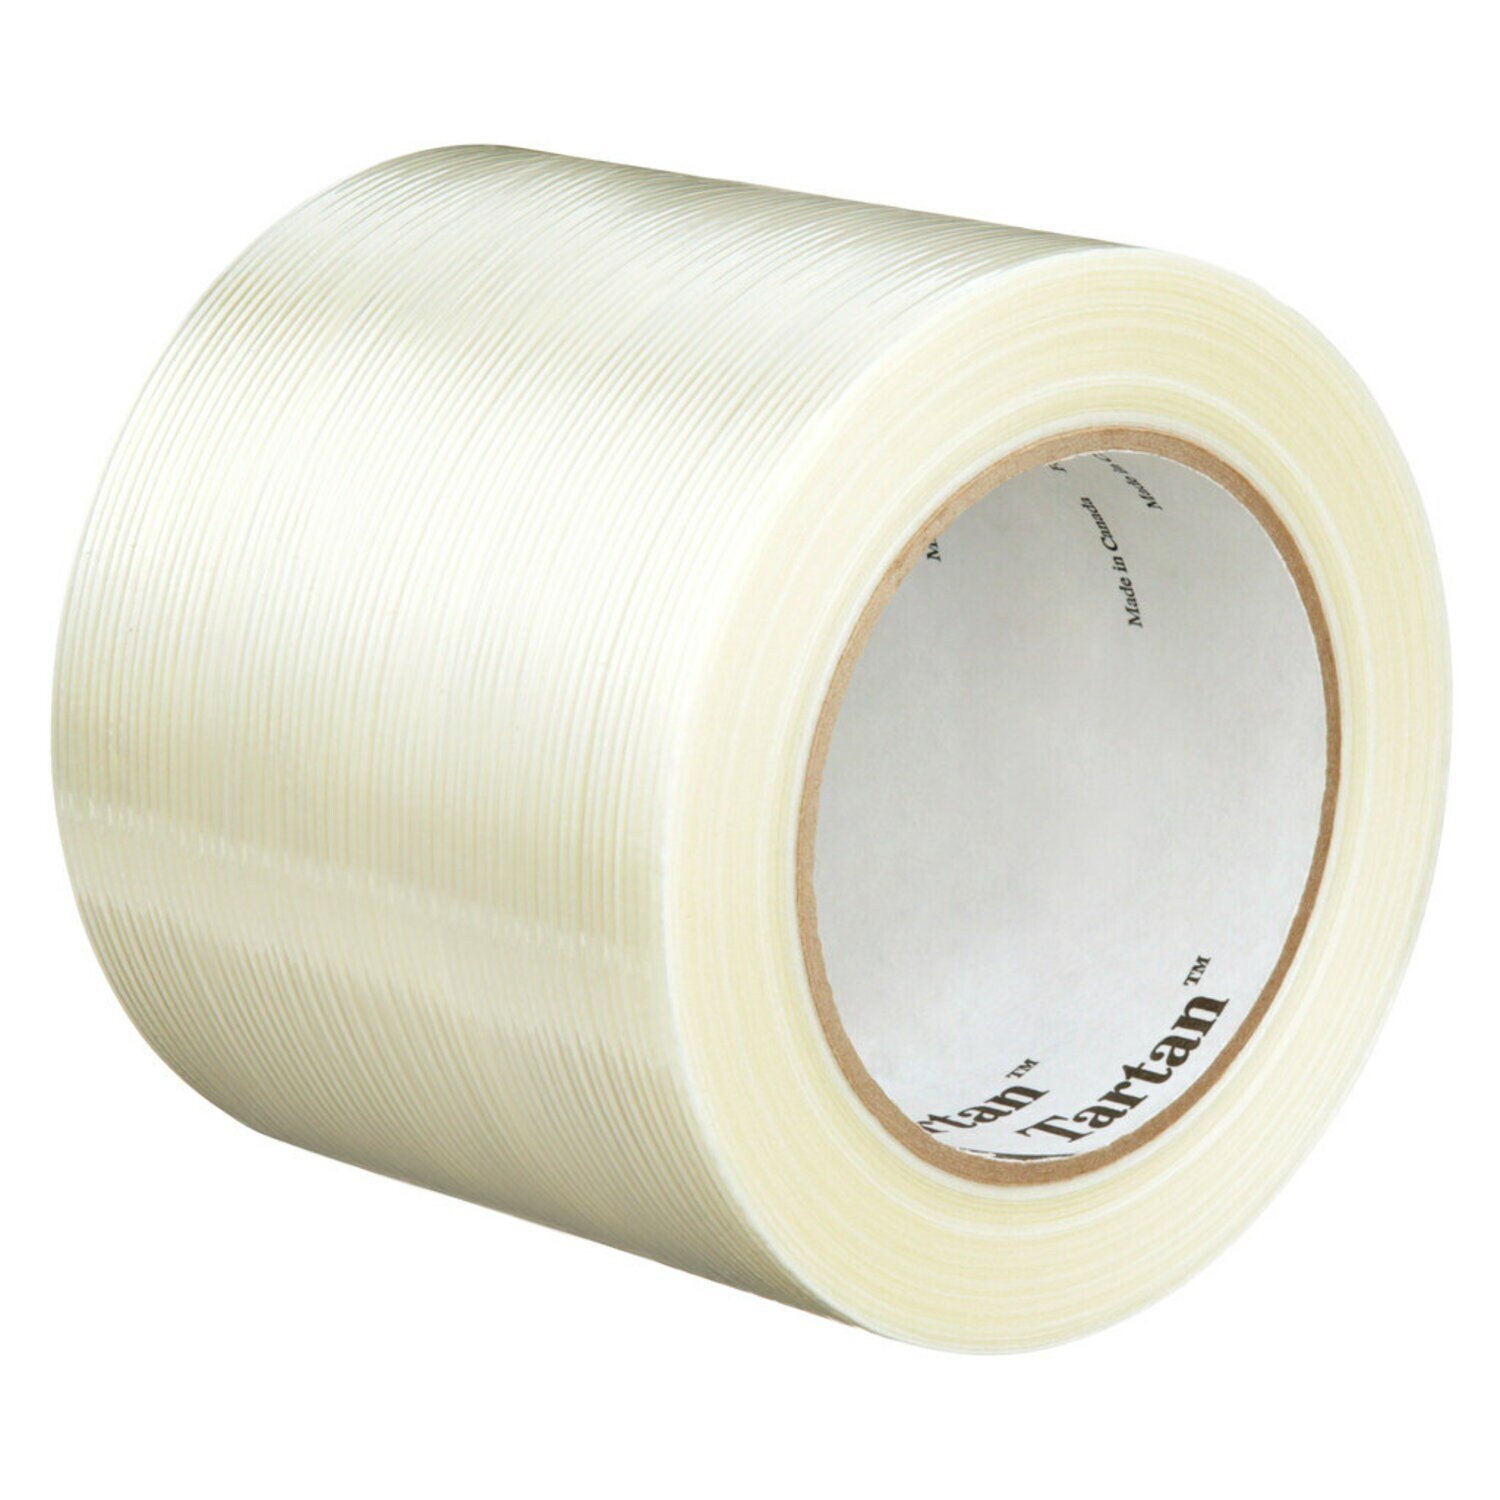 7000136860 - Tartan Filament Tape 8934, Clear, 96 mm x 55 m, 4 mil, 12 rolls per
case